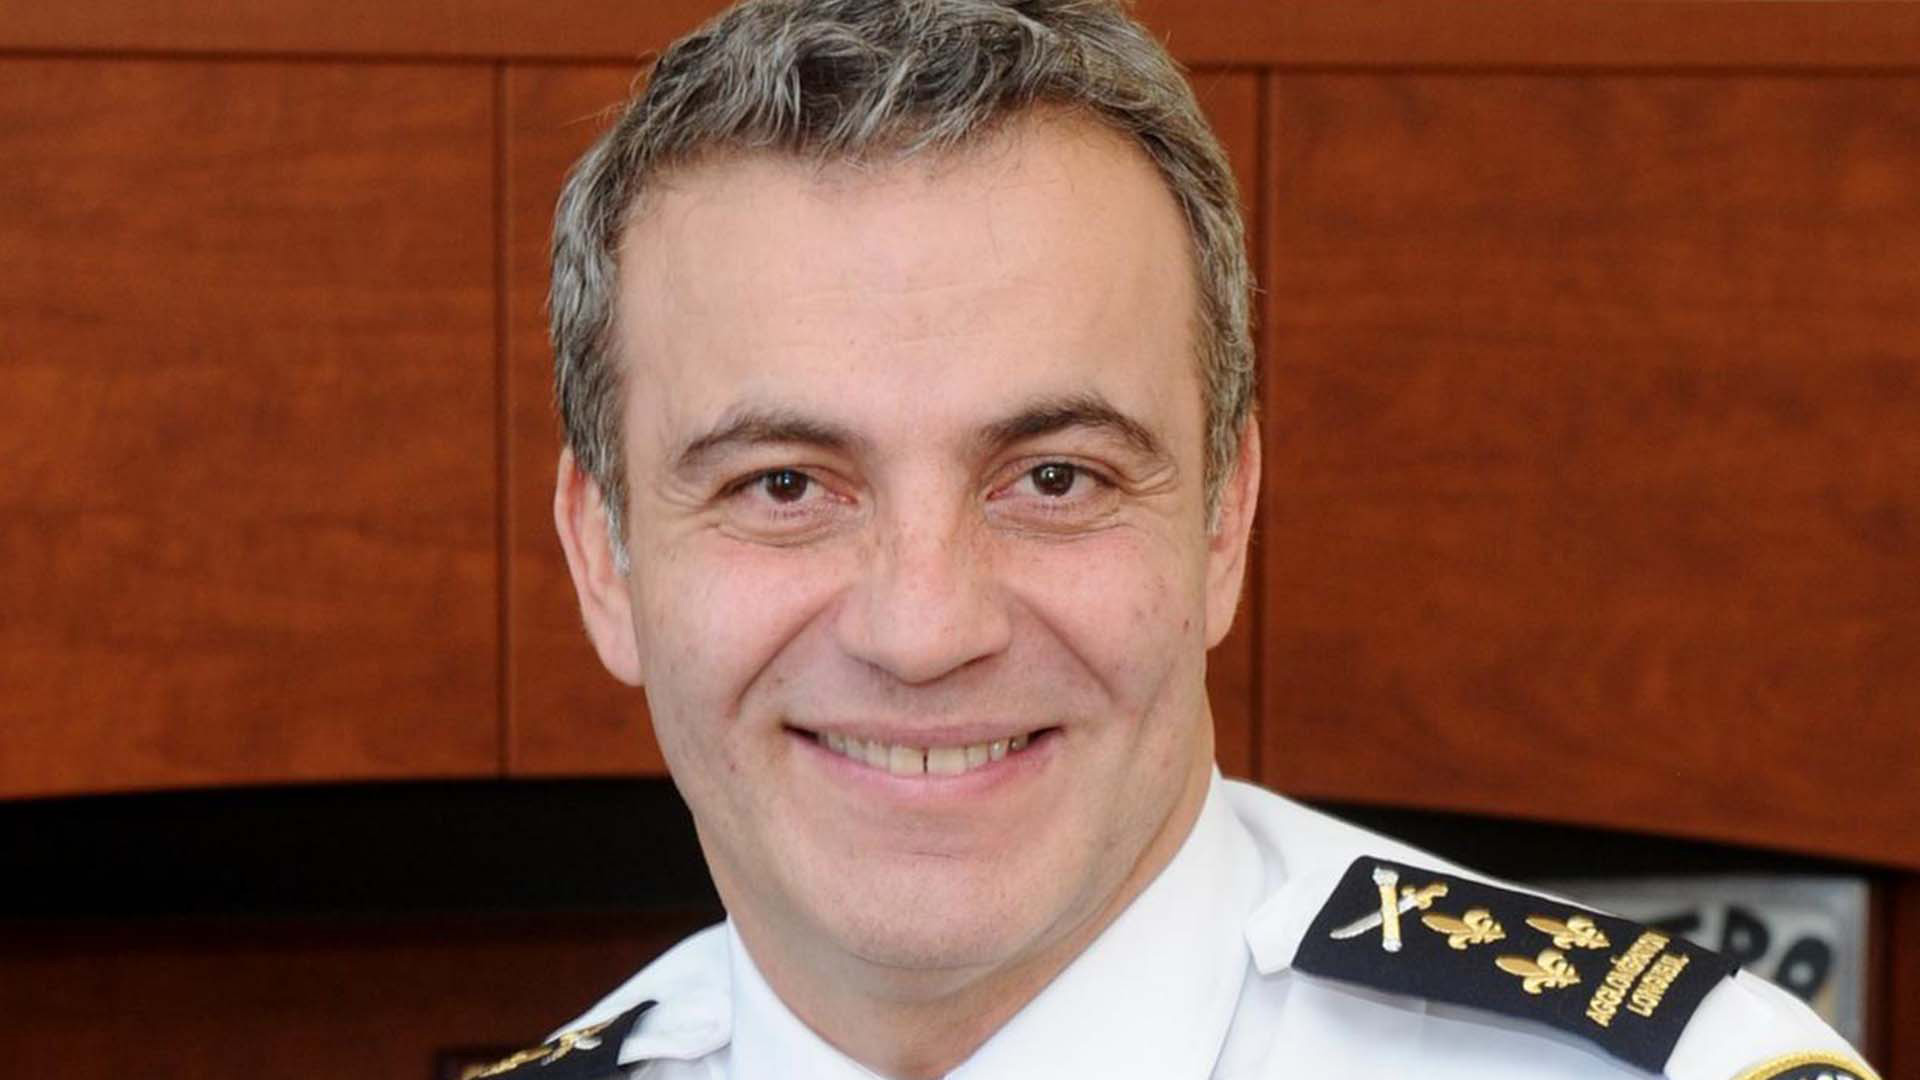 Le chef du Service de police de l'agglomération de Longueuil (SPAL), Fady Dagher, deviendra le nouveau chef de police du Service de police de la Ville de Montréal (SPVM).